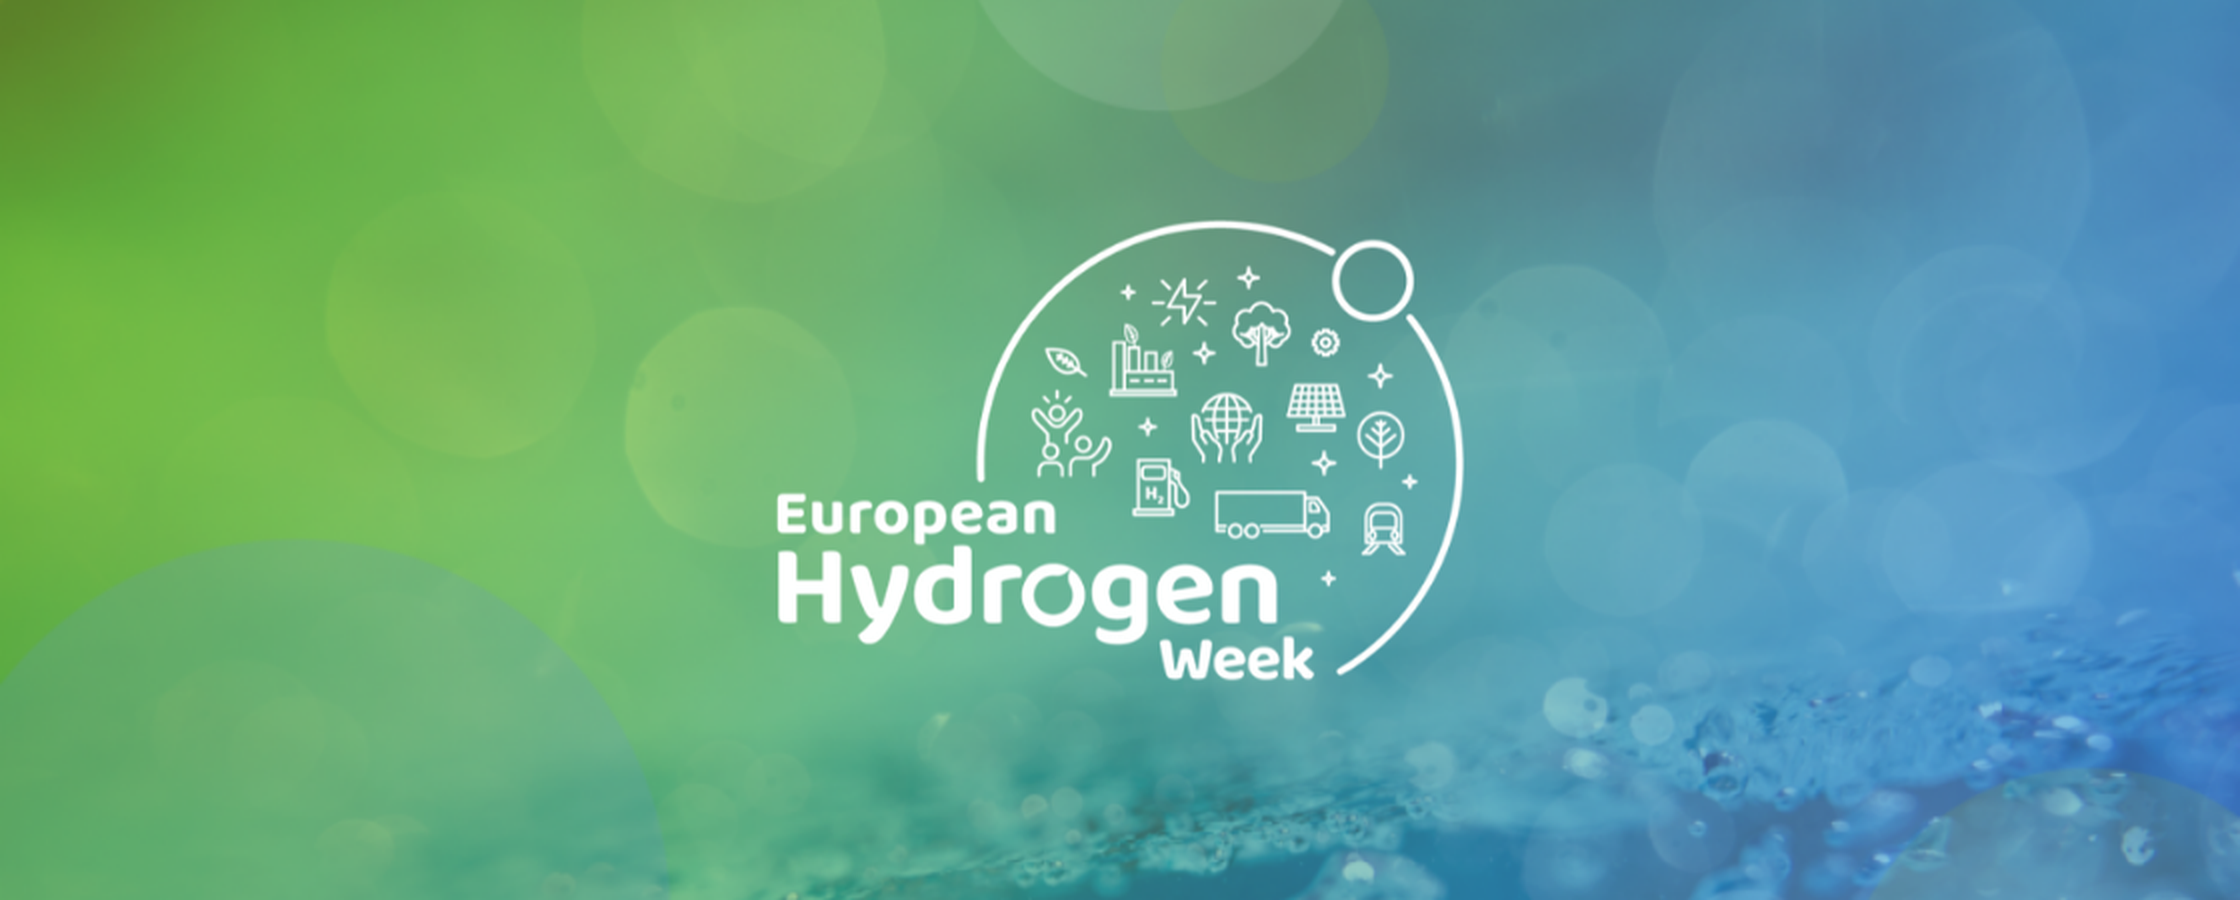 European Hydrogen Week - 1120x450.png